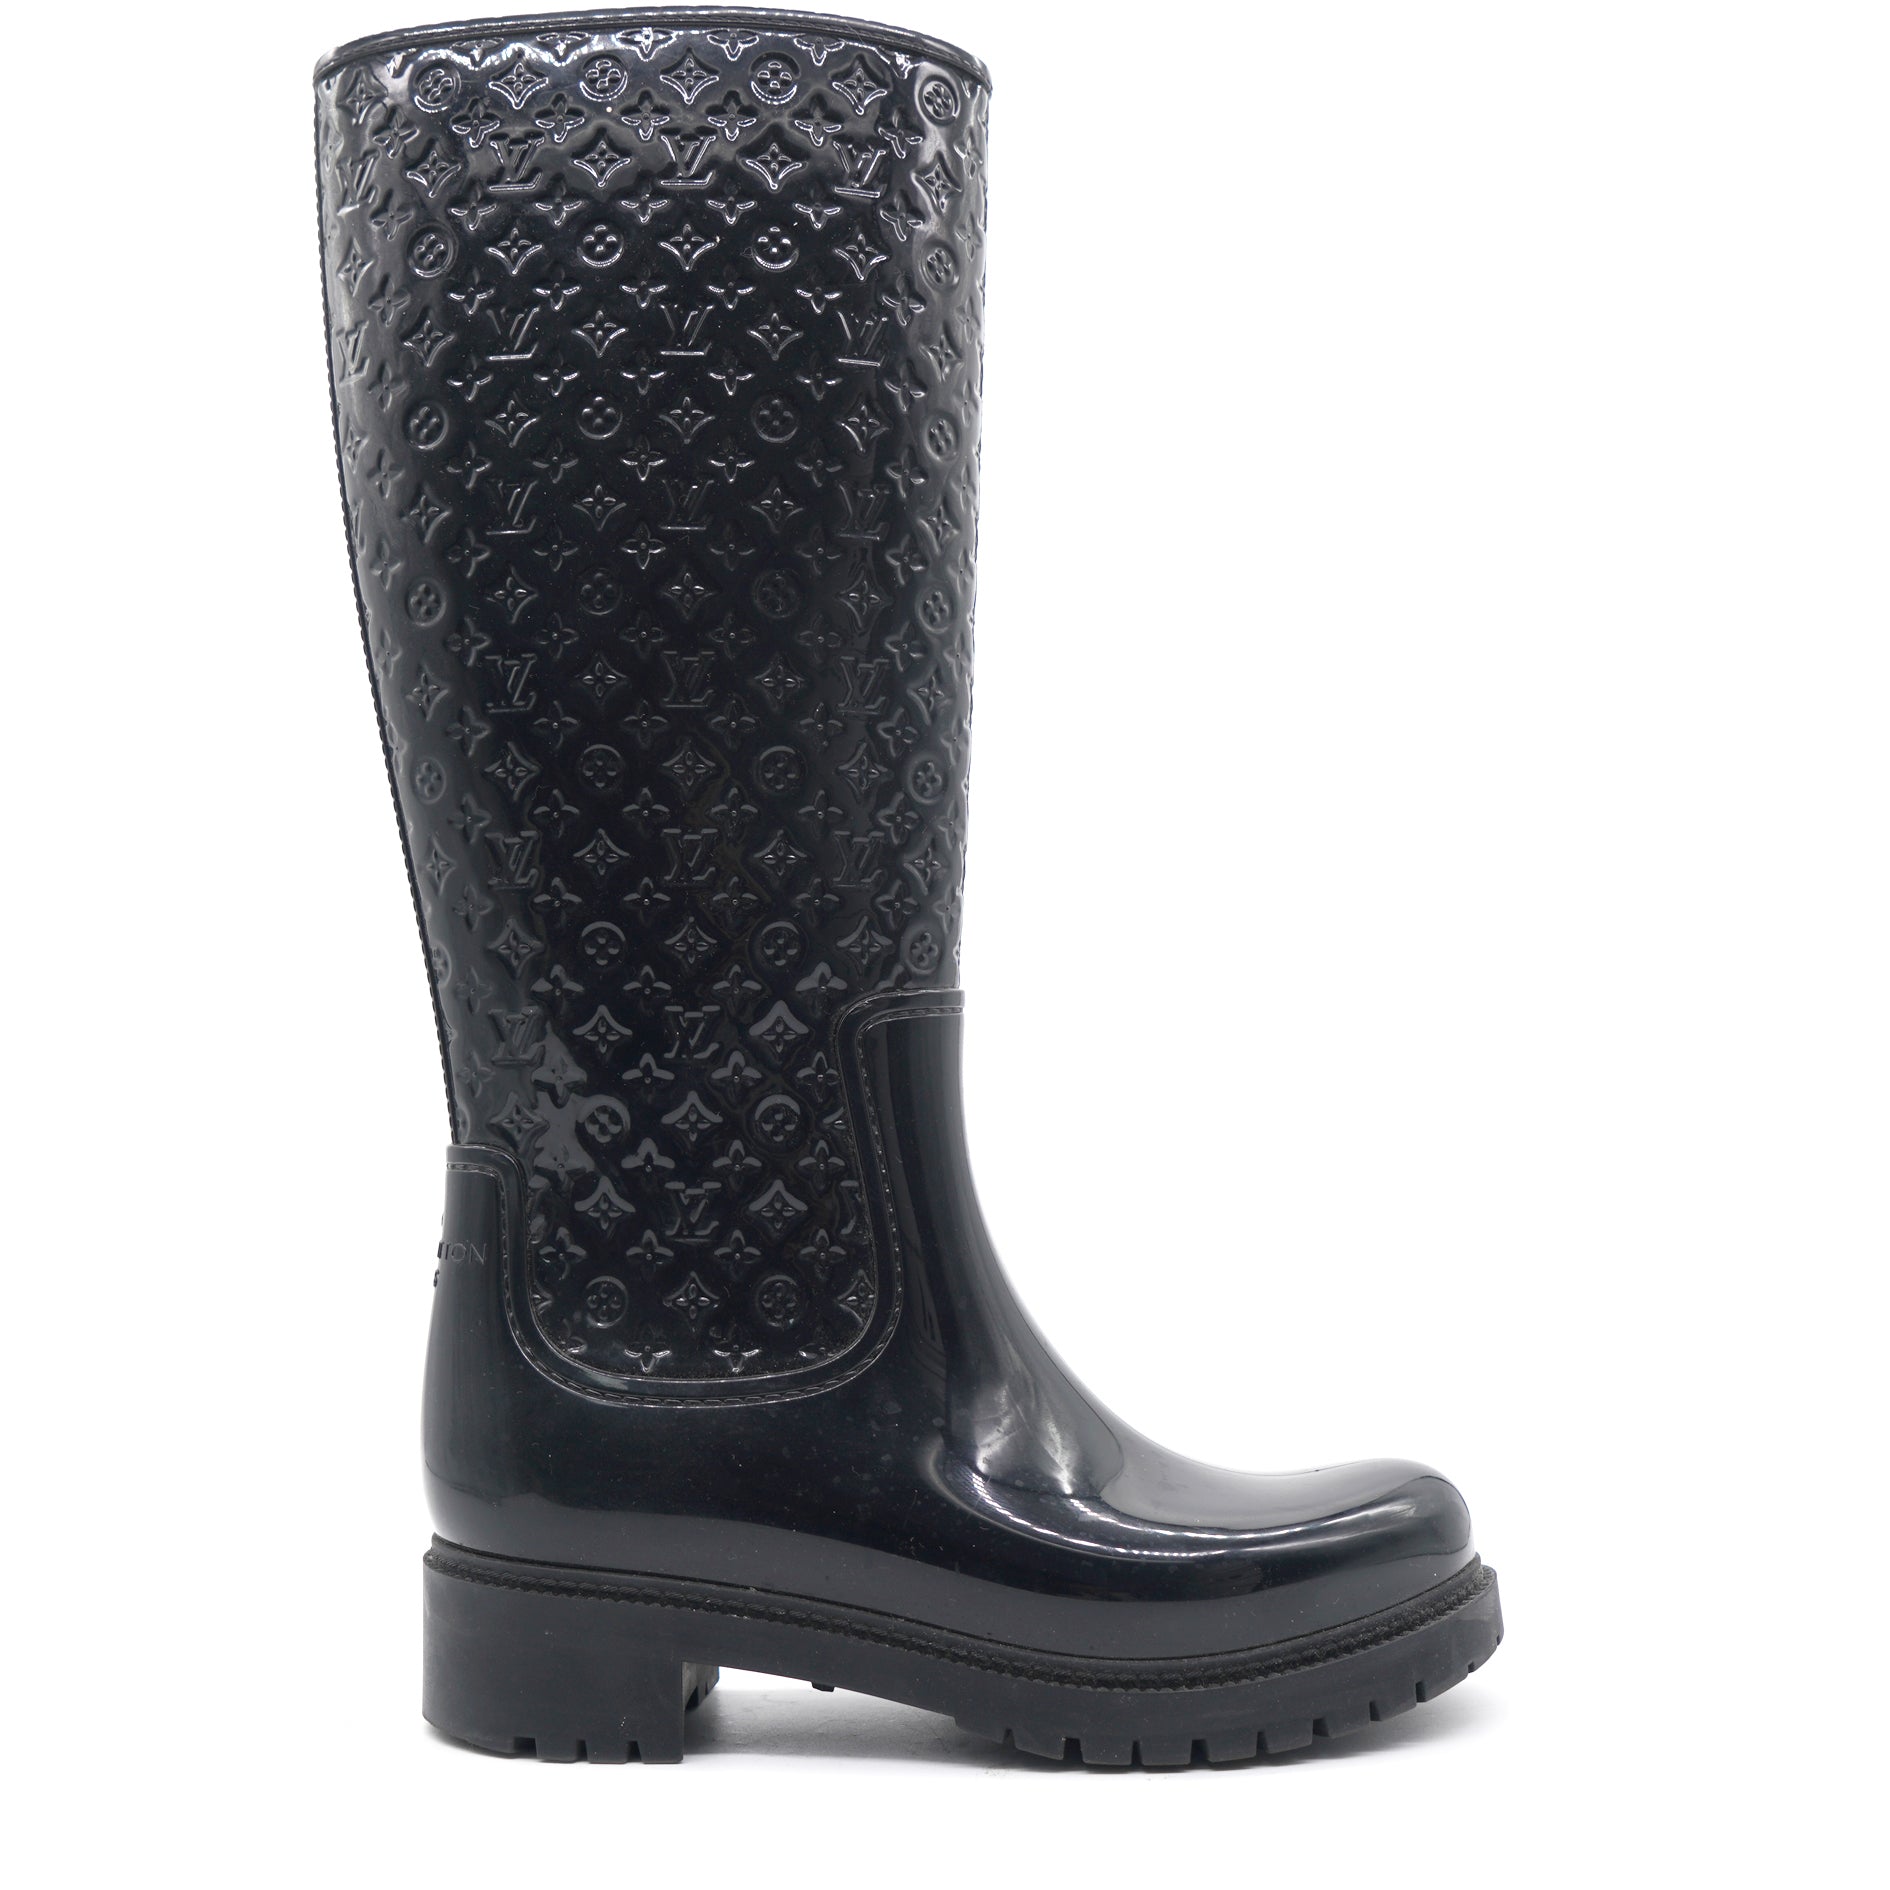 Drops wellington boots Louis Vuitton Black size 37 EU in Rubber - 26778868